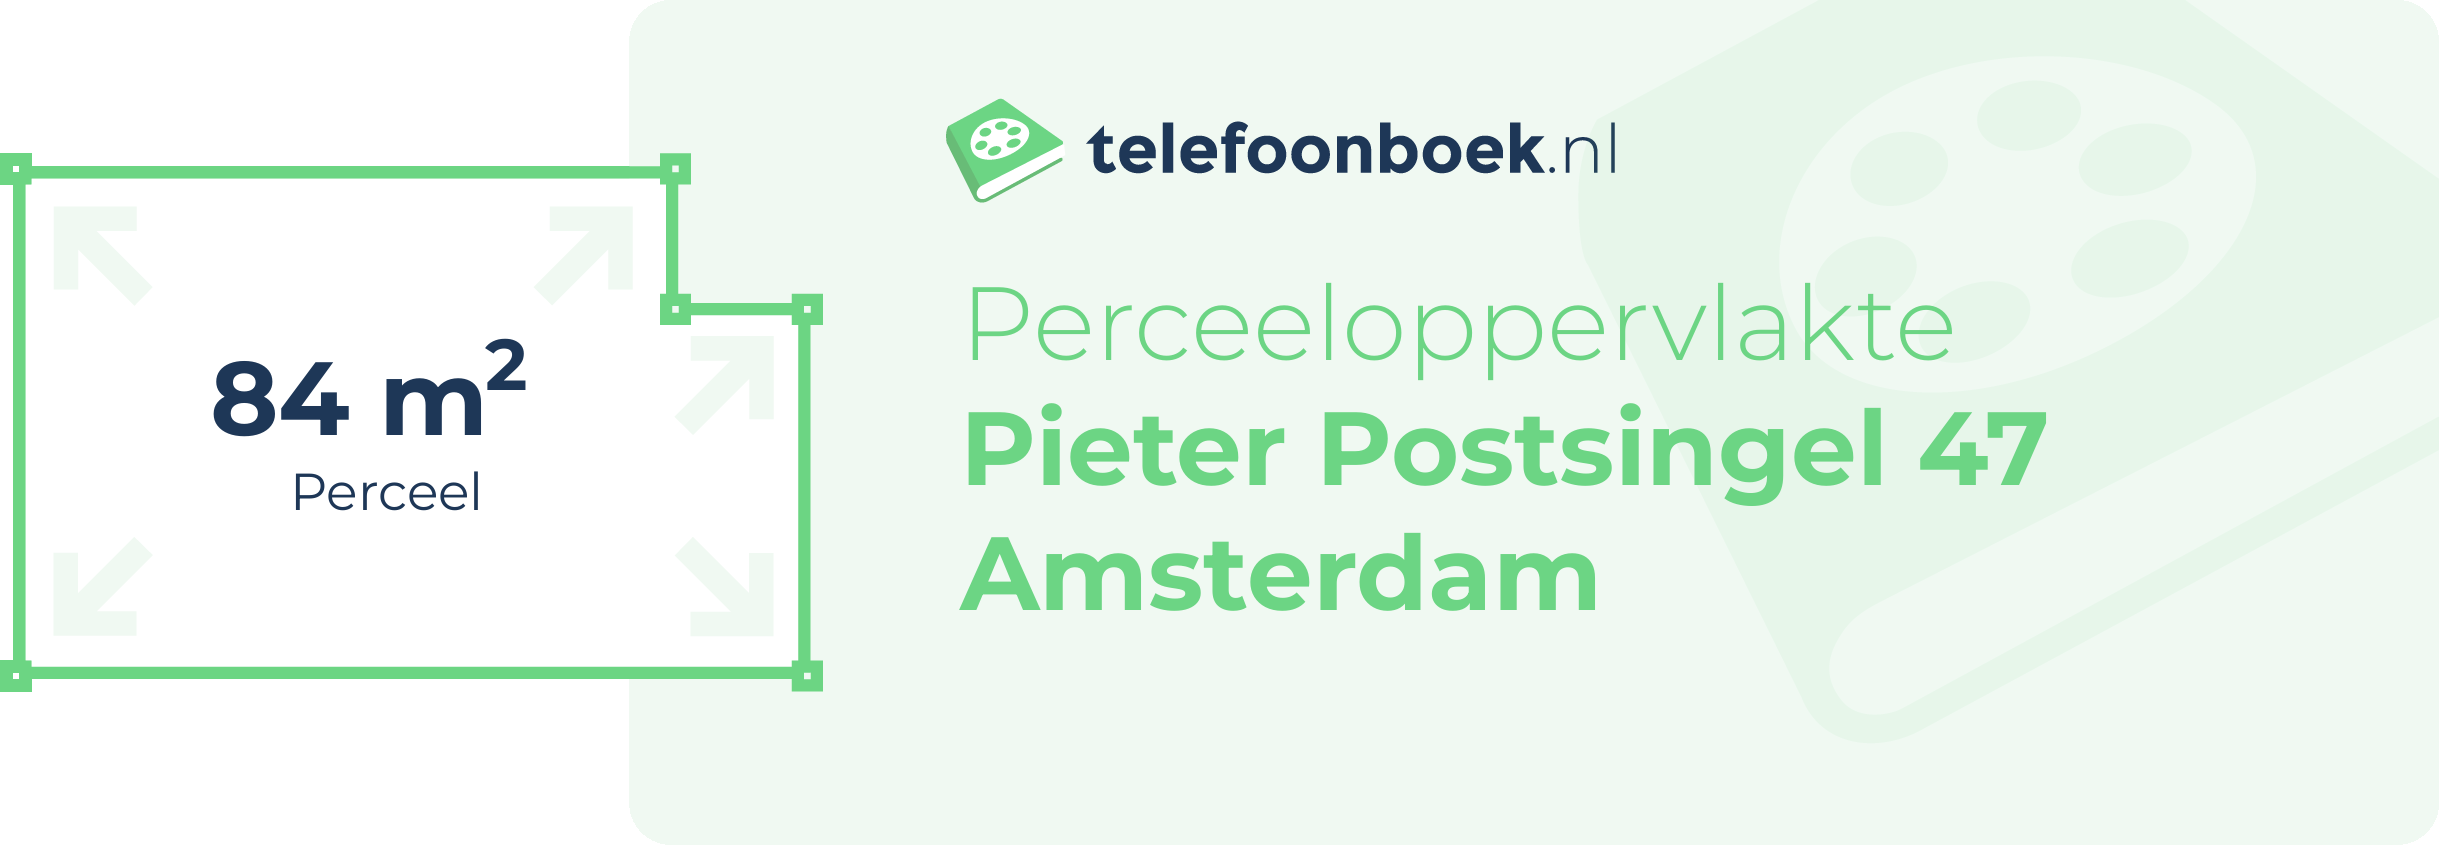 Perceeloppervlakte Pieter Postsingel 47 Amsterdam